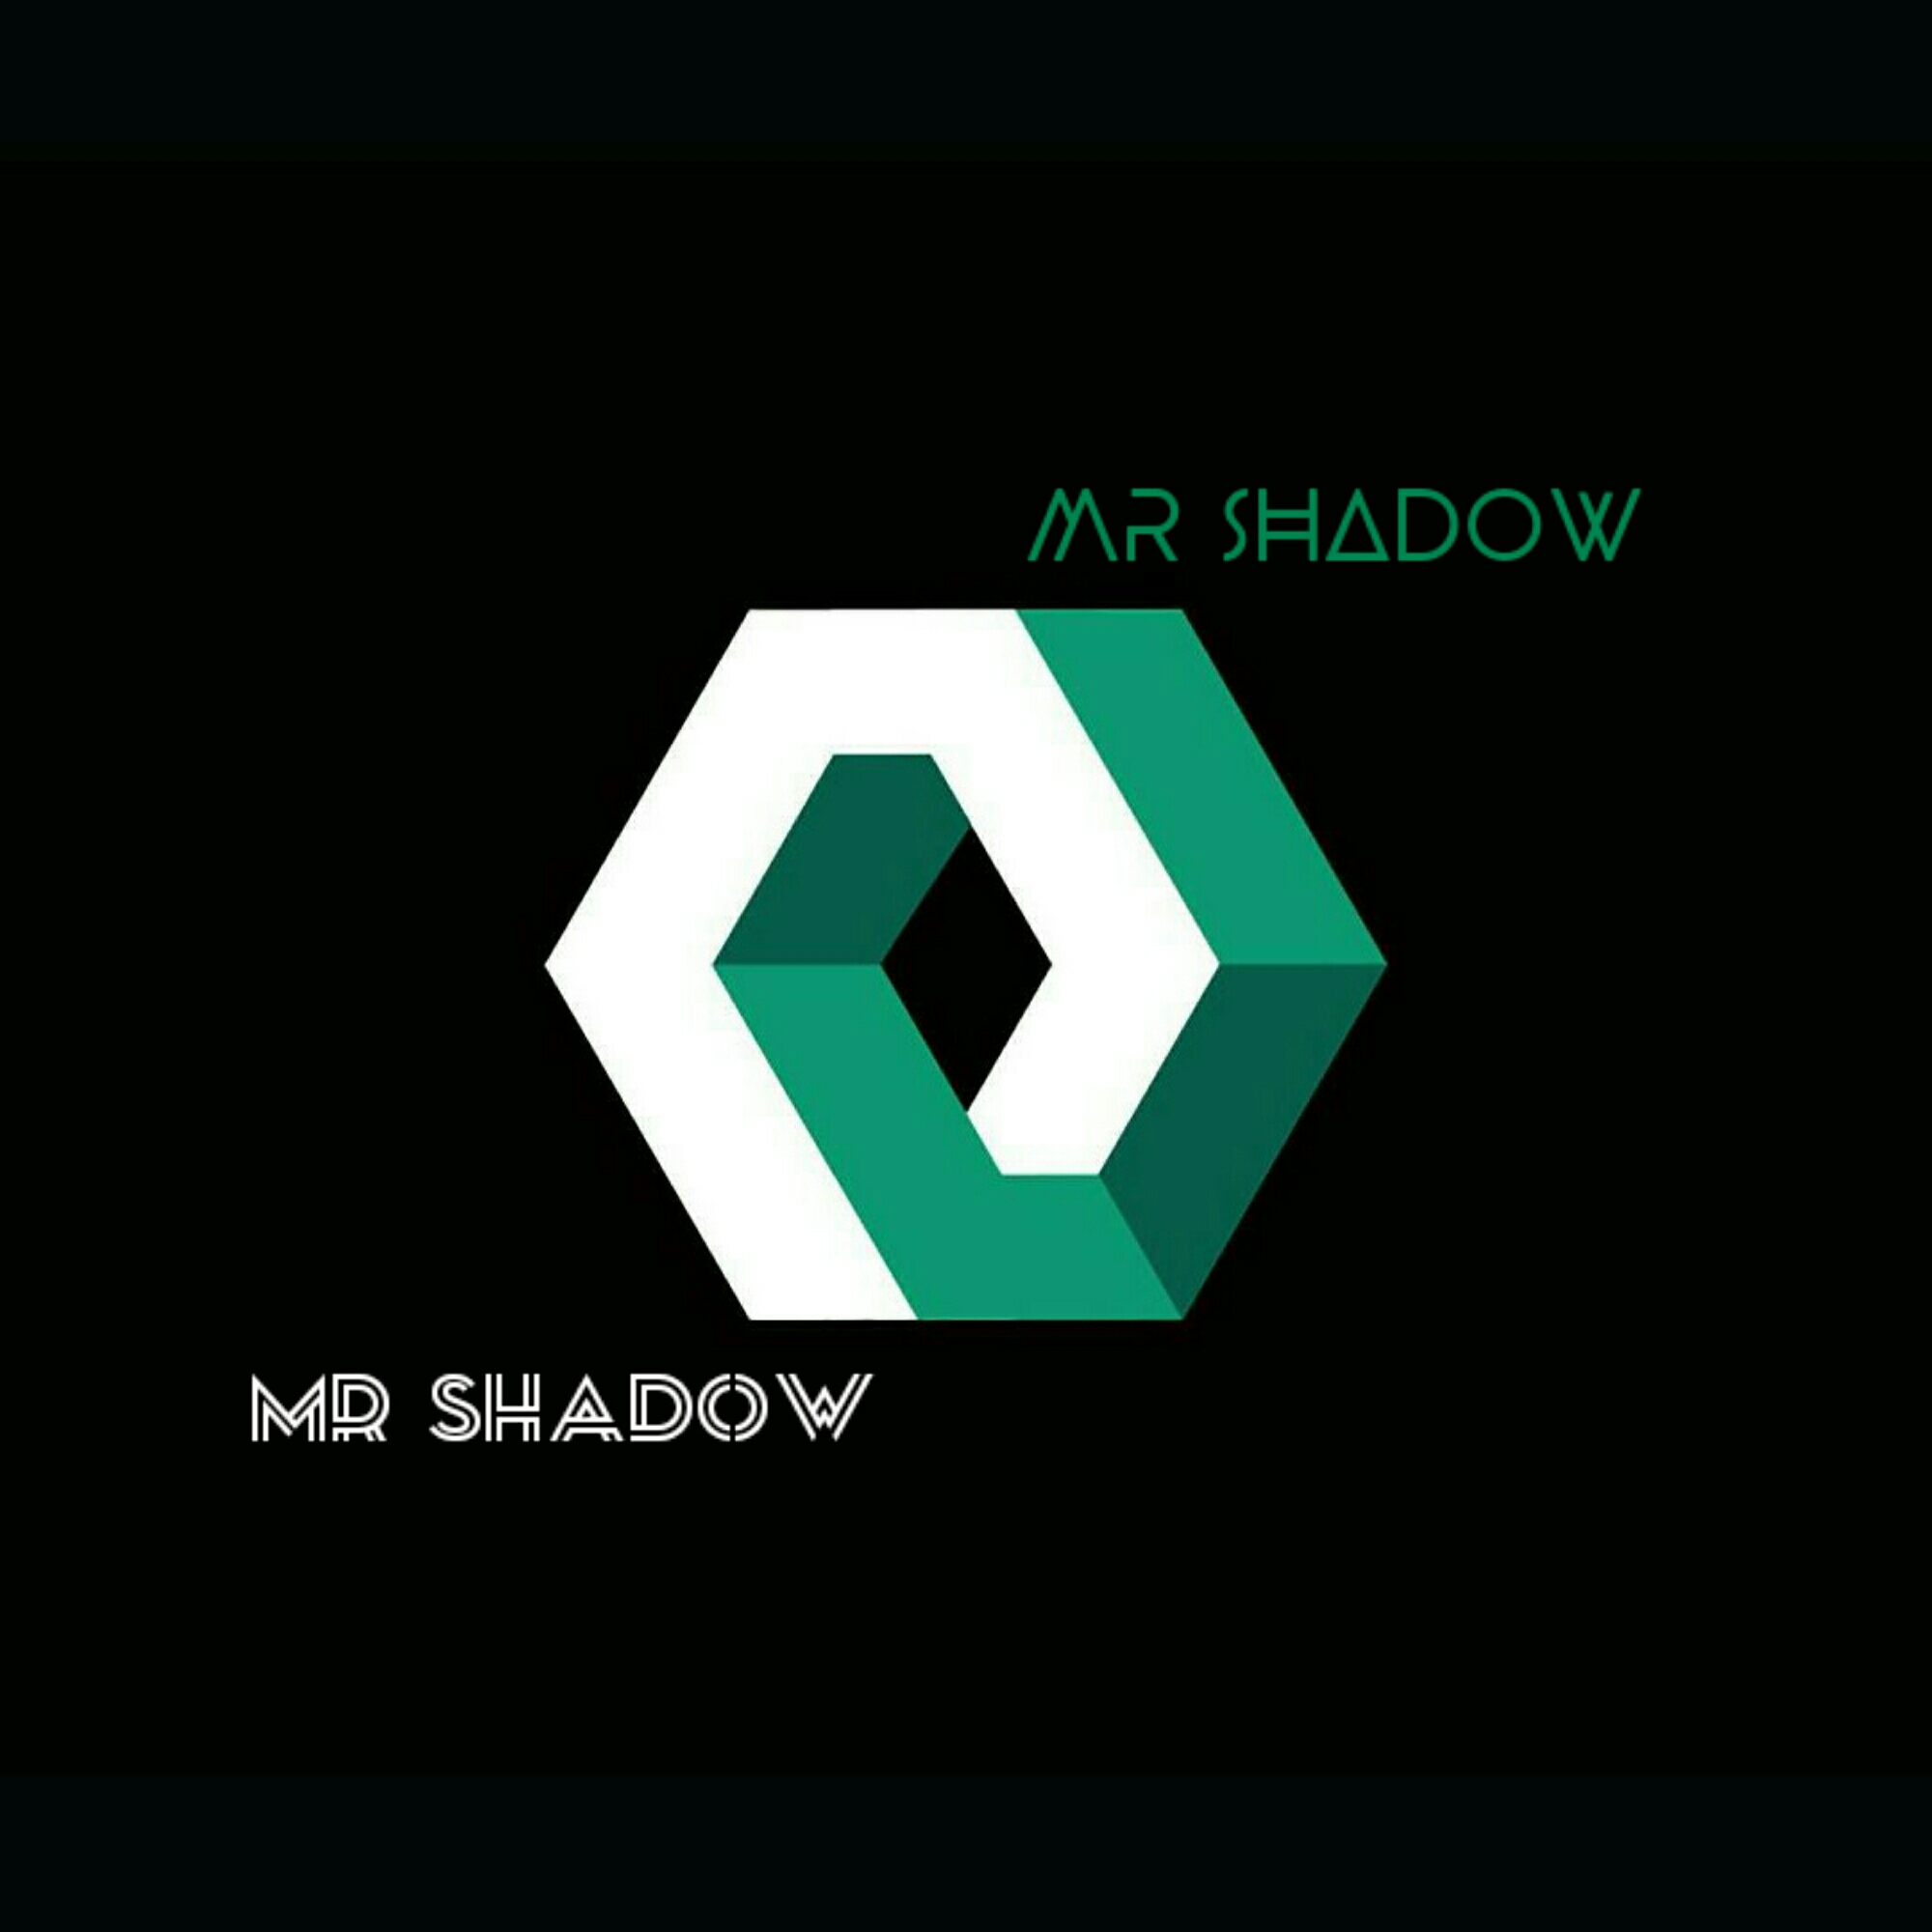 Mr shadow